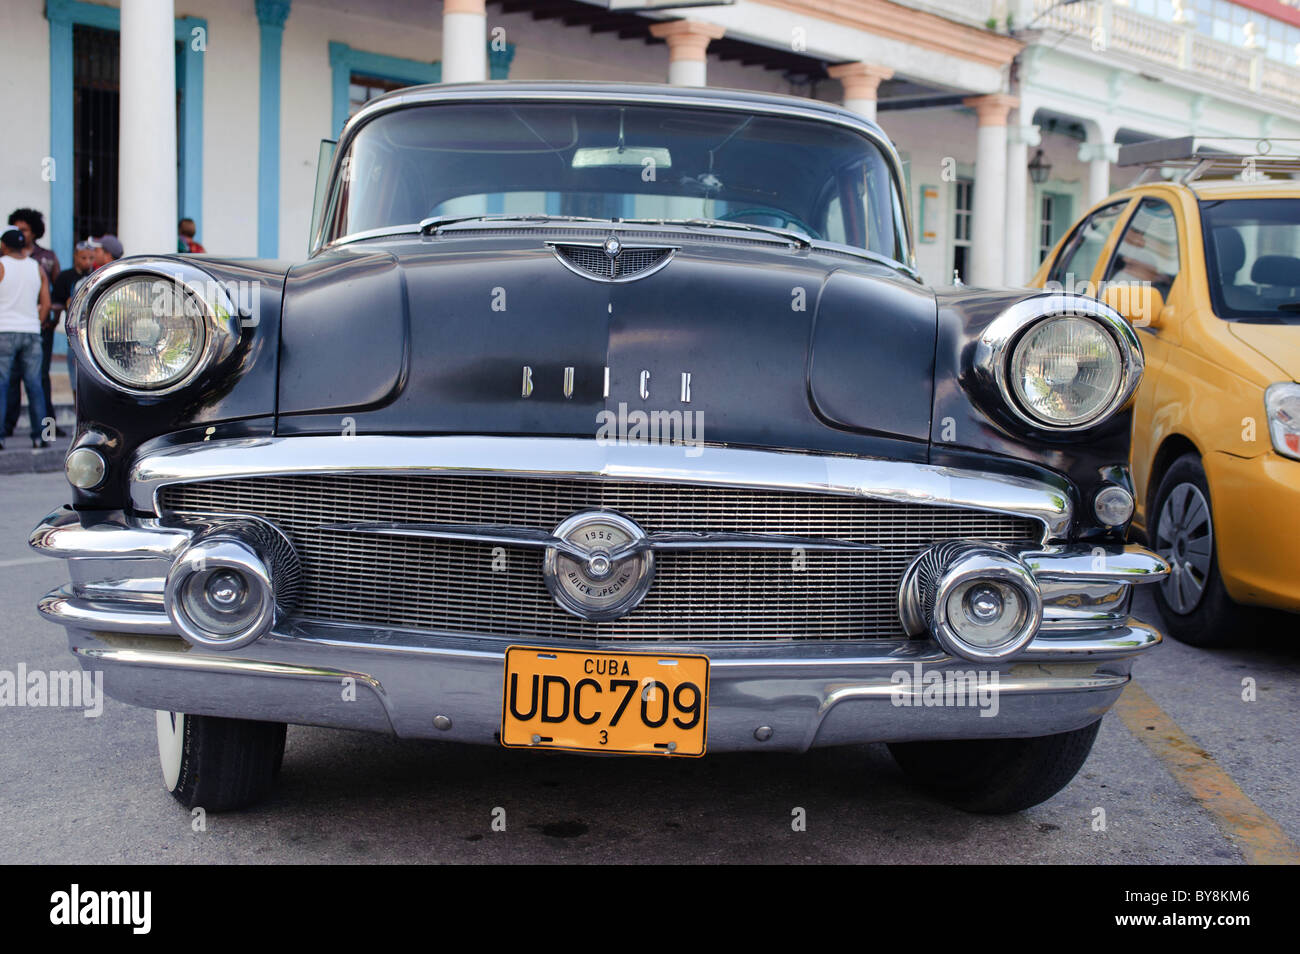 Viejo clásico americano black car Buick aparcado en Holguín Cuba Foto de stock